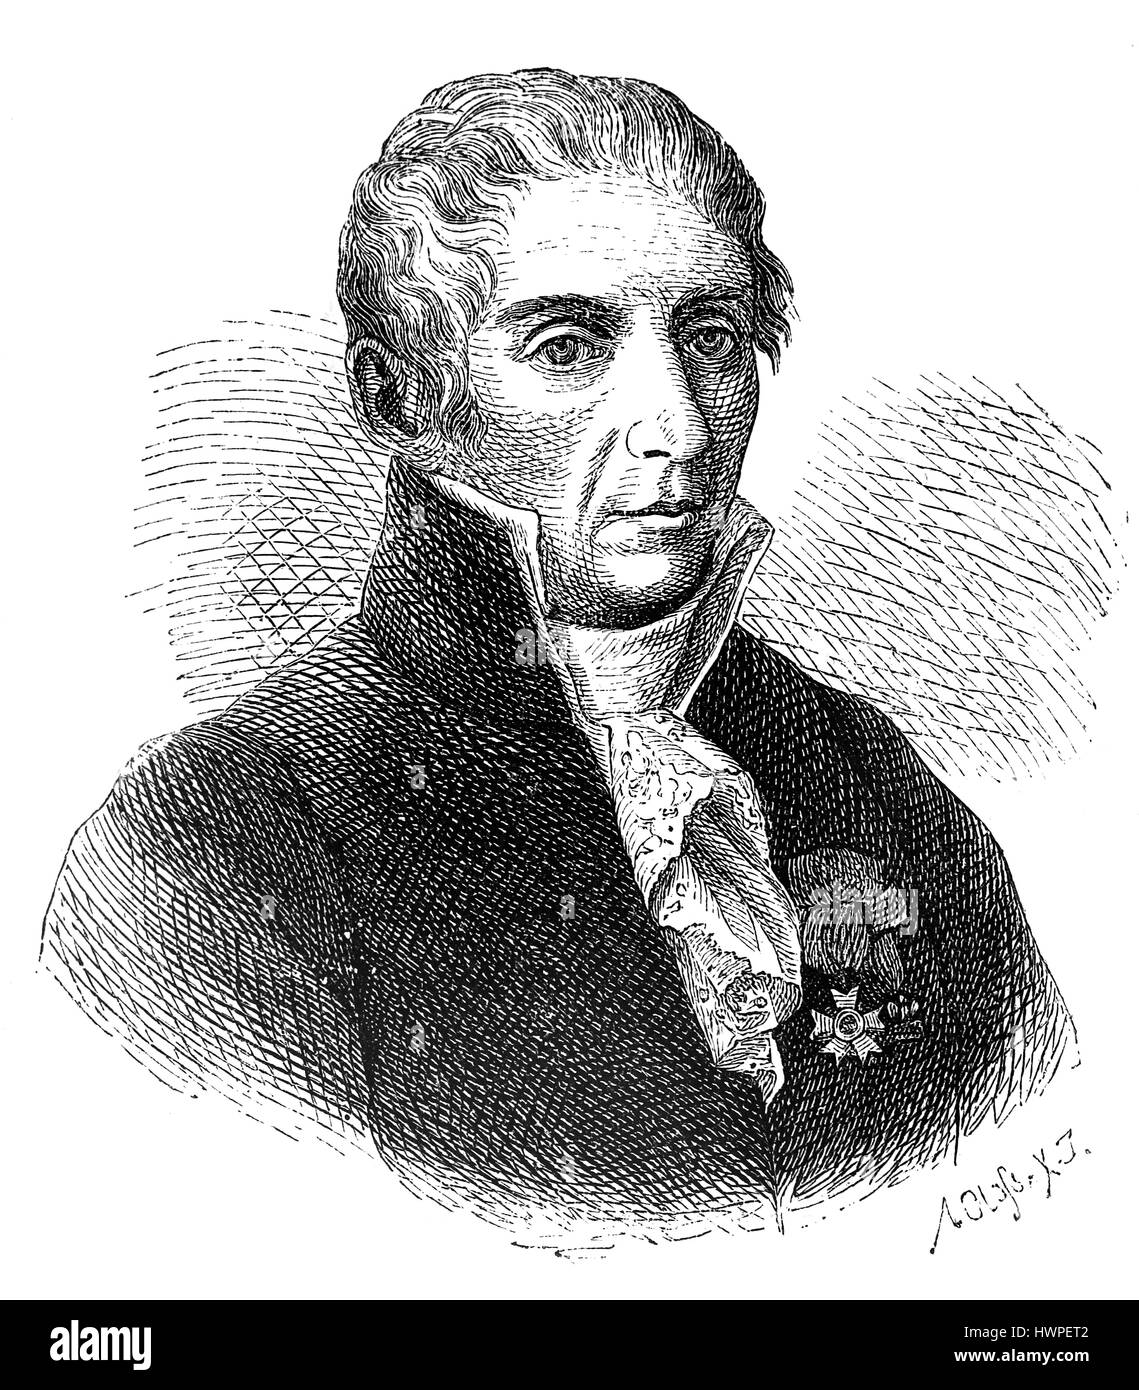 Alessandro Volta (1745-1827). Italienischer Physiker, Chemiker und Pionier der Elektrizität. Kupferstich, 1883. Stockfoto